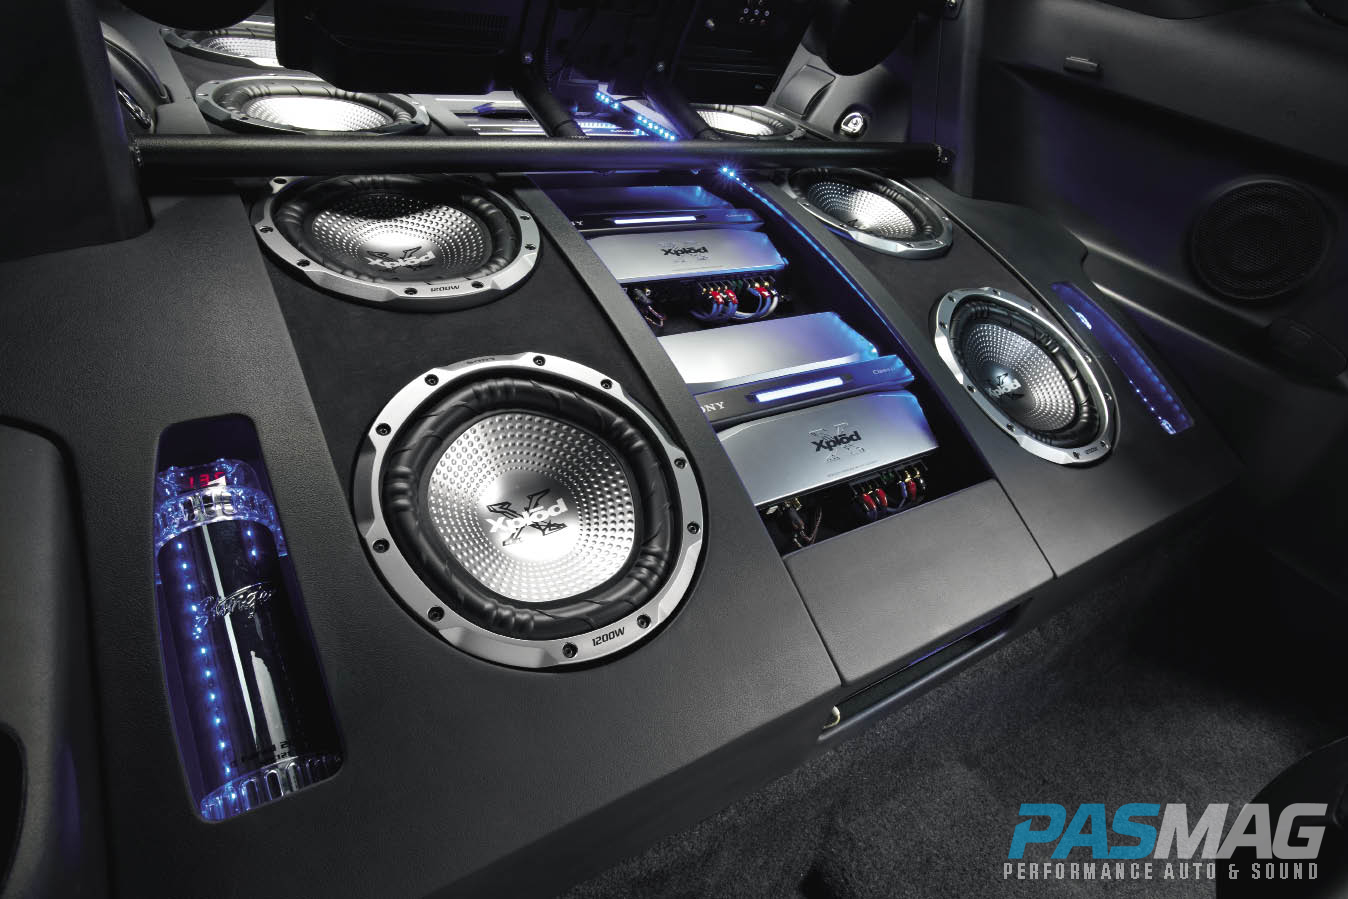 Оригинальный звук использован. Car Audio System 60wx4. Car Audio в Bentley Continental 2008 Speakers. Sony car Audio System. Сабвуфер GB car Audio System.